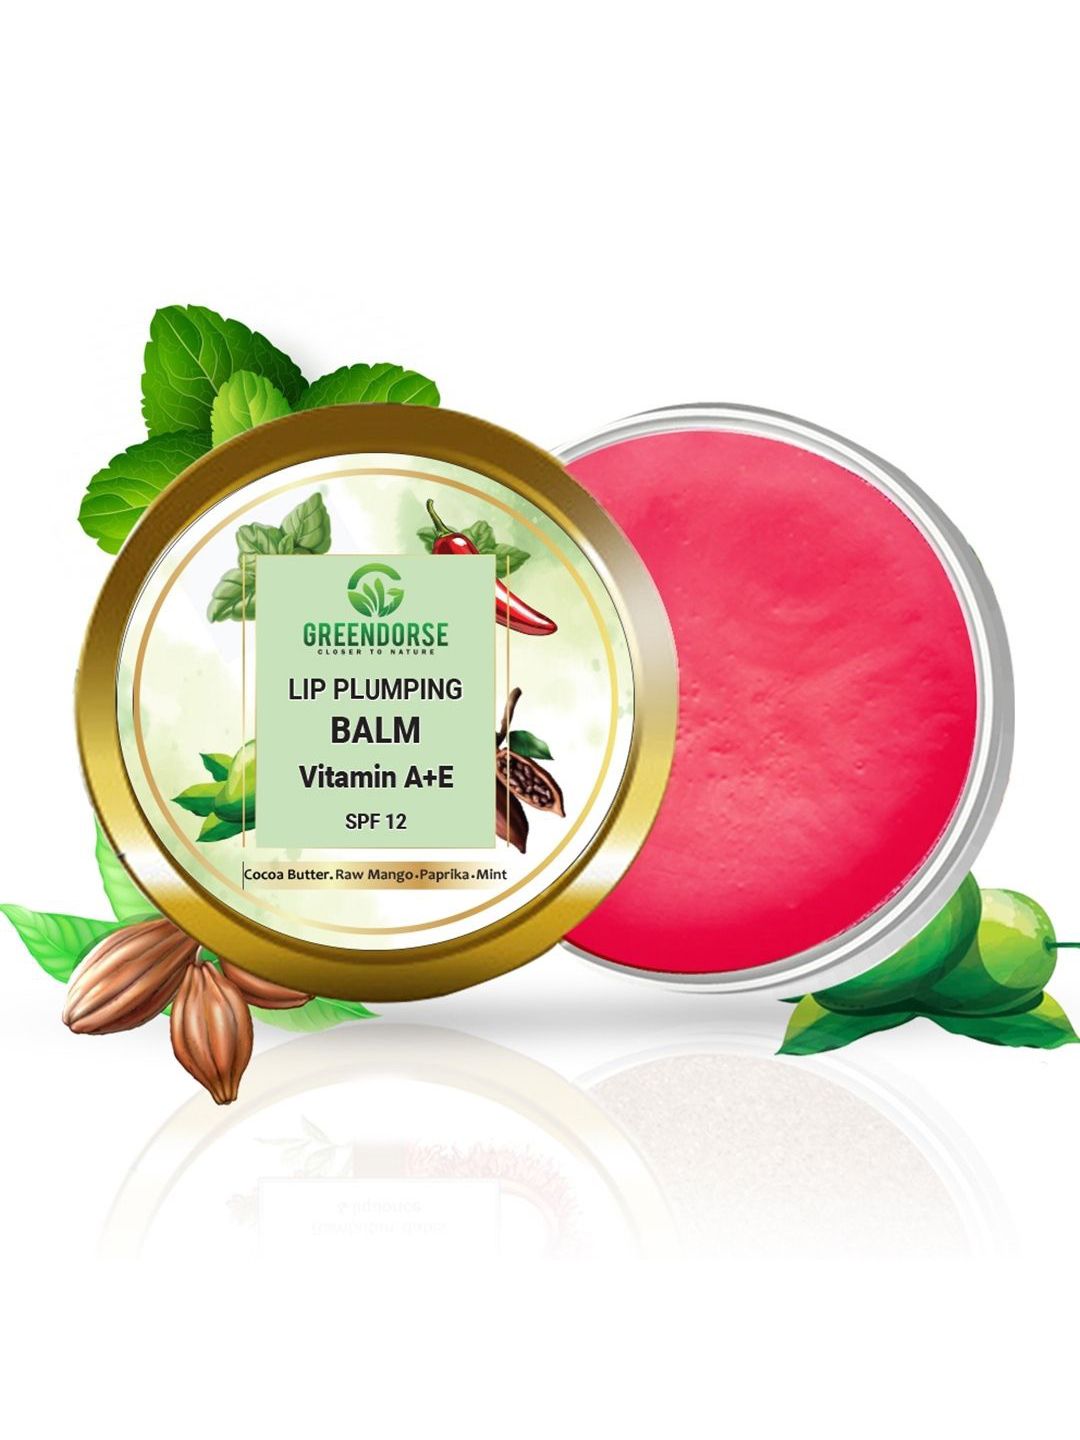 GREENDORSE Lip Plumping Balm - Vitamin A+E Price in India